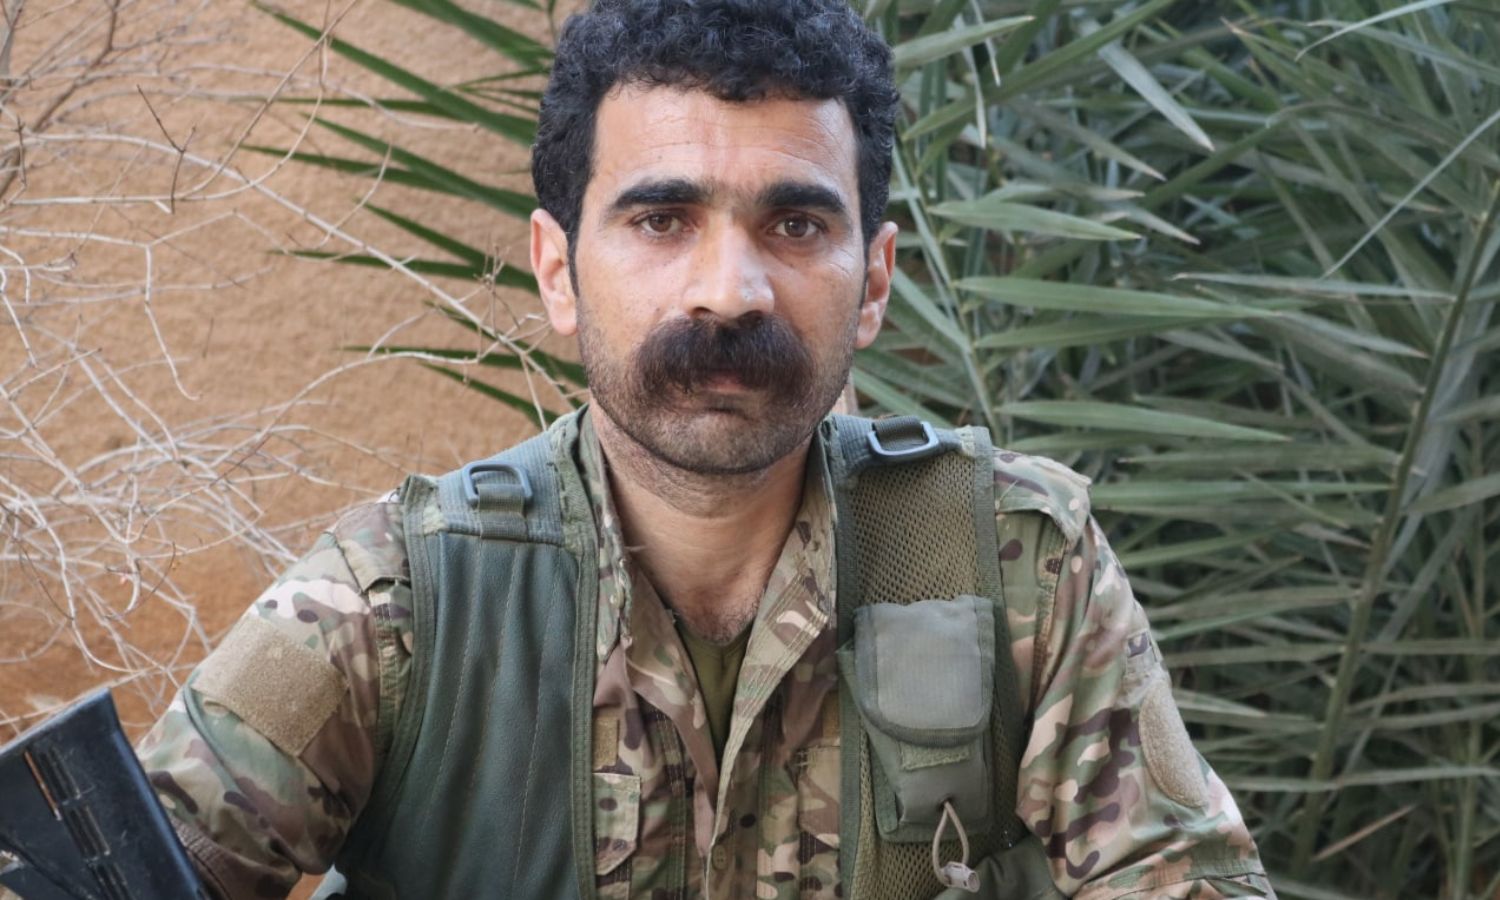 القيادي في "وحدات حماية الشعب" الكردية أيوب ياقوت الملقب بـ(آميد دورشين)- (YPG Press Office)